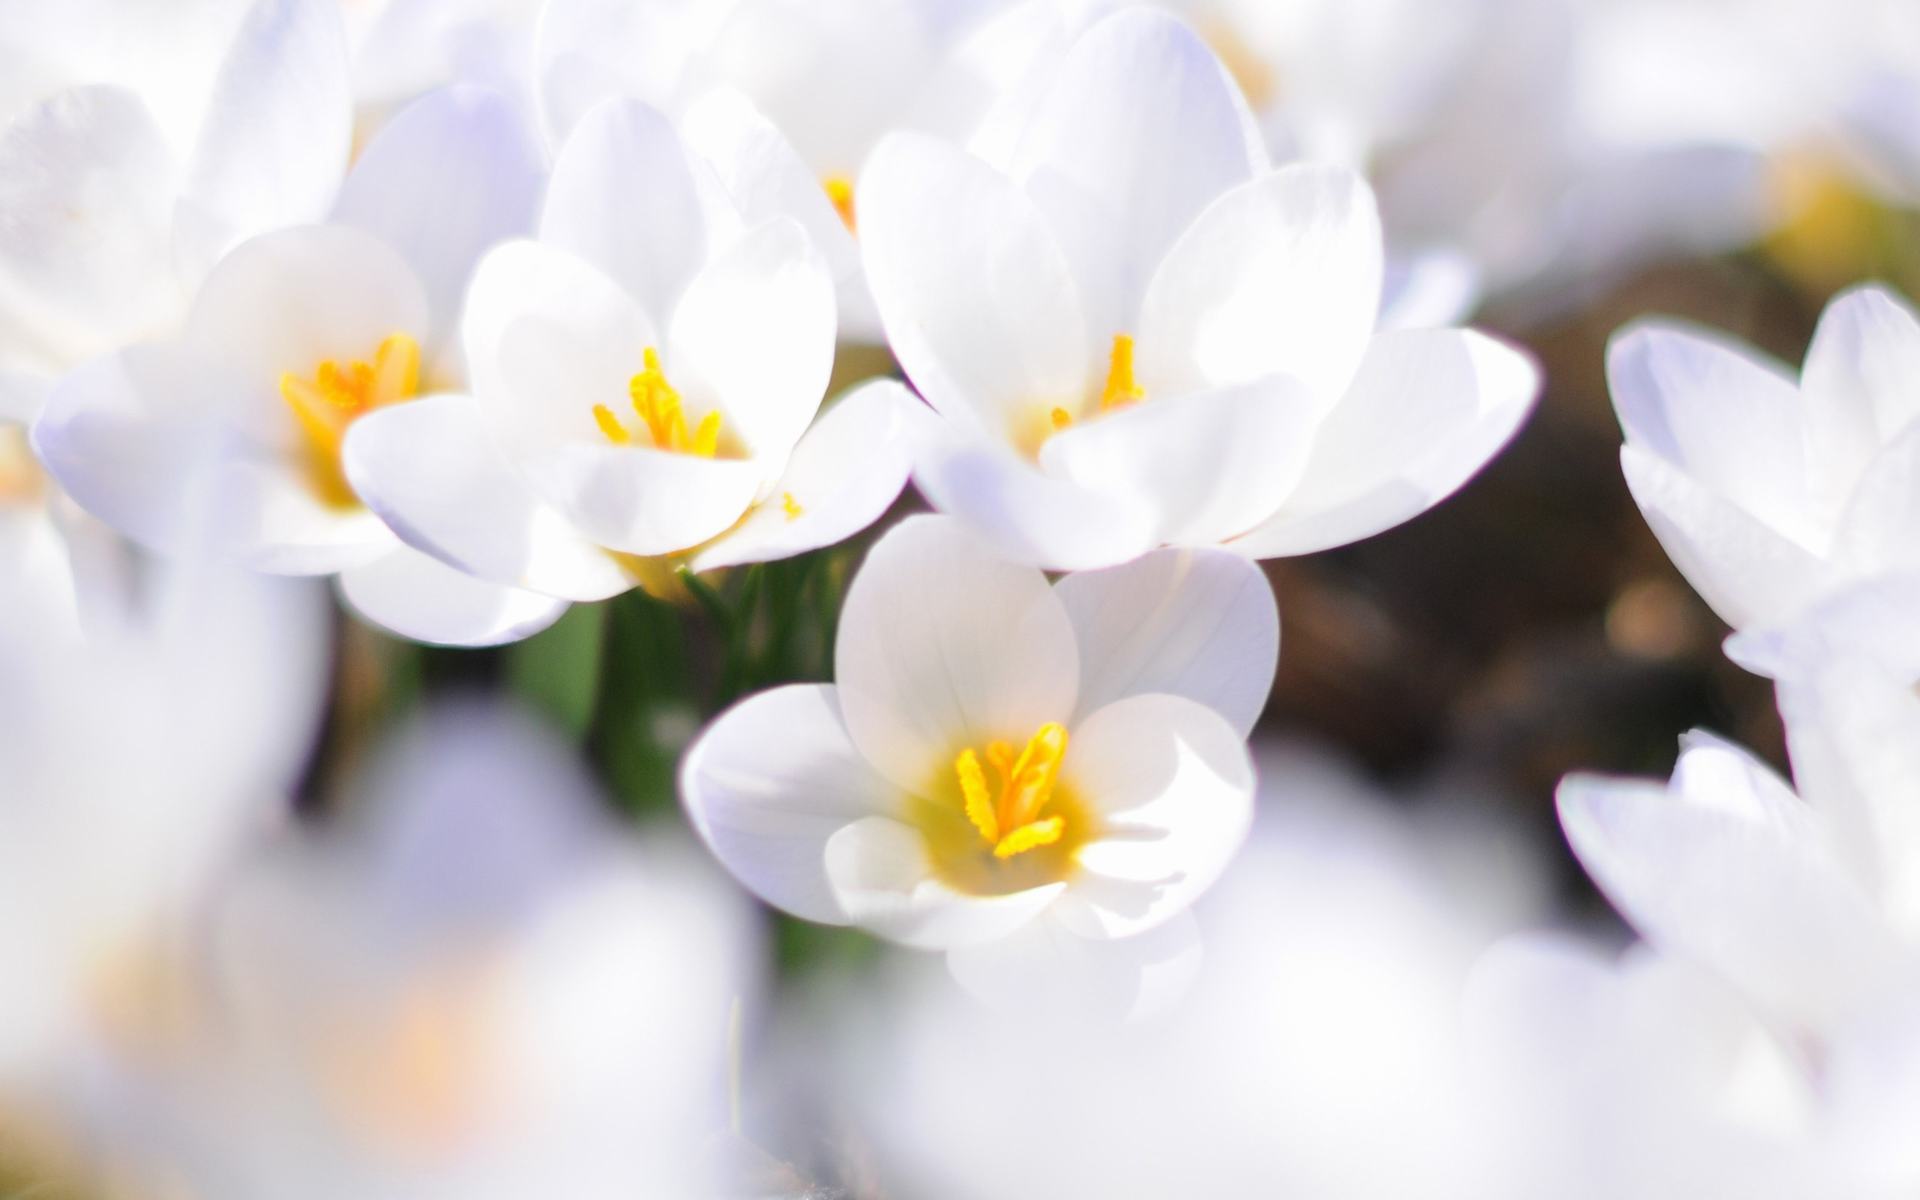 Hình nền  Hoa Vĩ mô những bông hoa màu trắng Phấn hoa Cánh hoa Worms  Eye View Hình nền máy tính thực vật có hoa Đóng lên Chụp macro Daisy  family